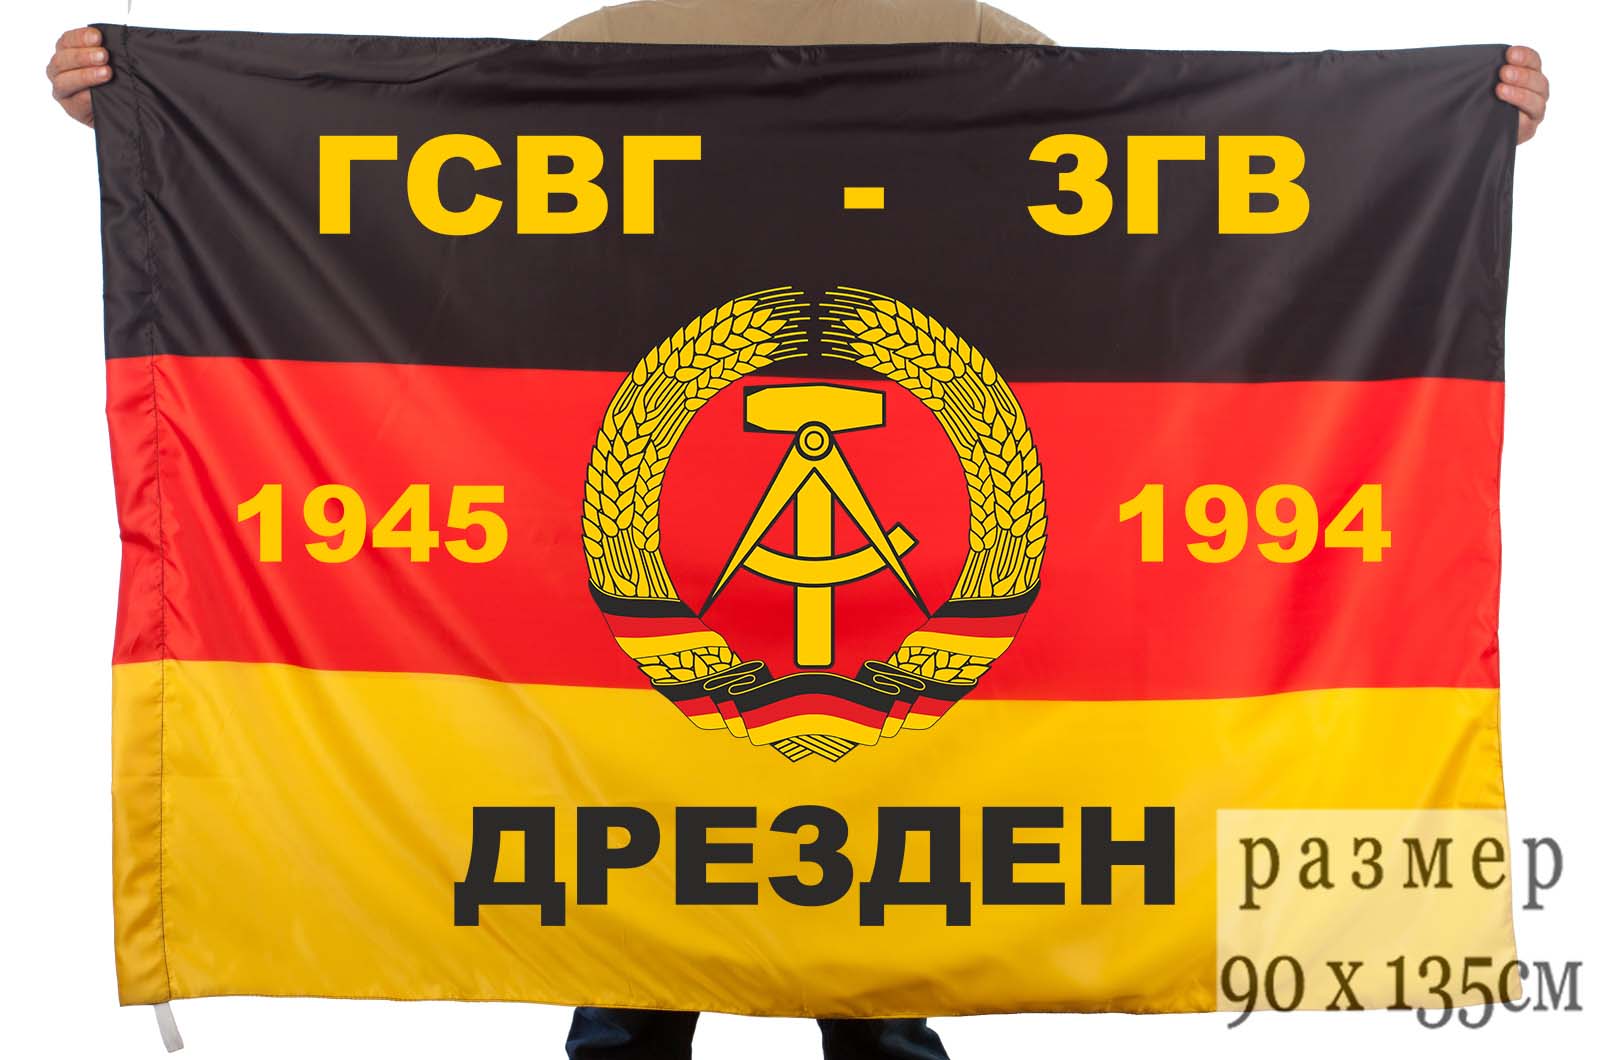 Флаг ГСВГ-ЗГВ «Дрезден»